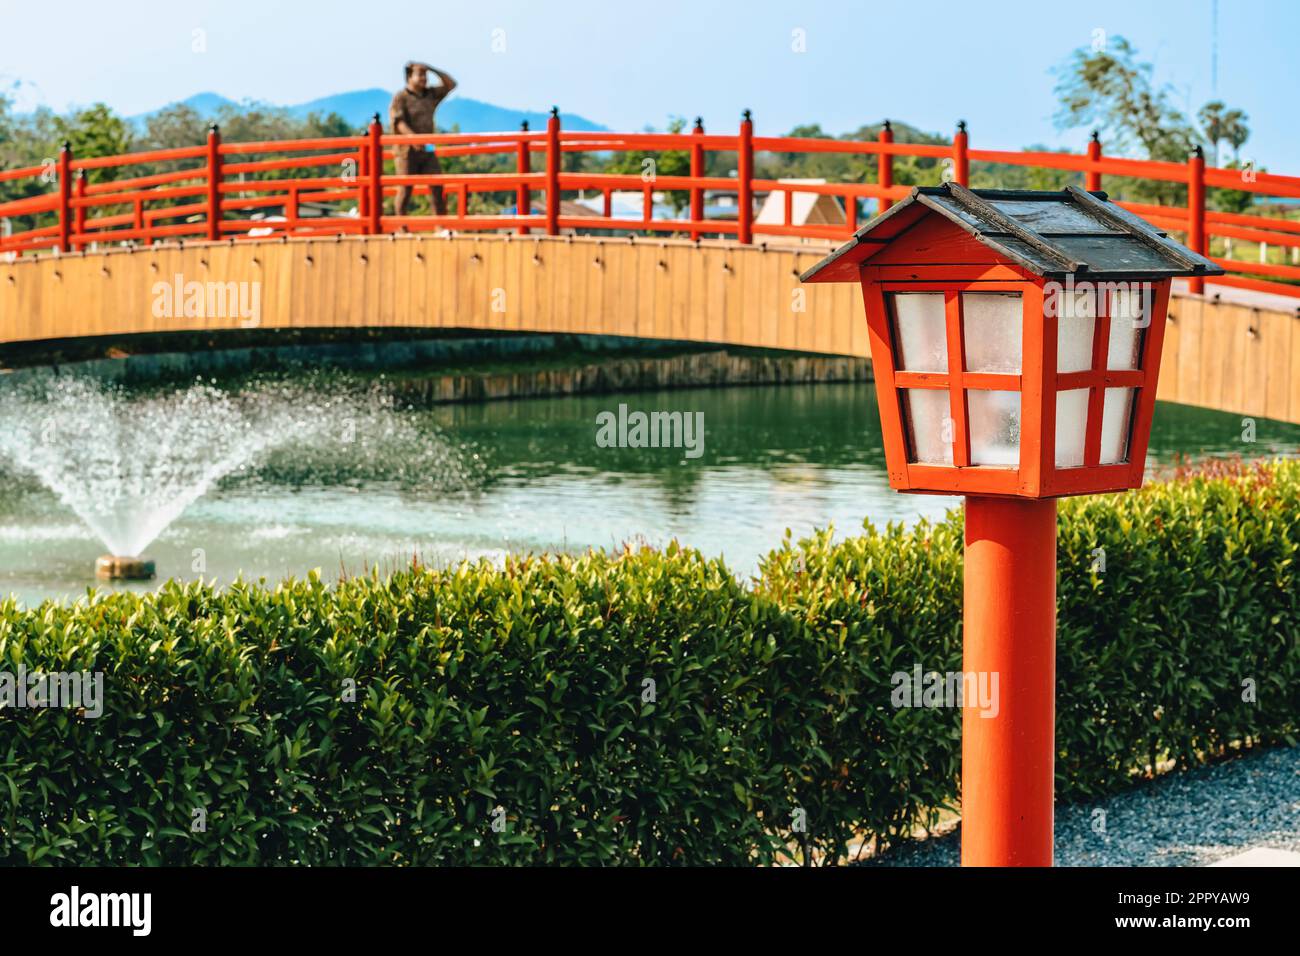 Splendida vista delle lampade all'aperto sulla passerella per l'illuminazione del giardino nel parco estivo con immagine sfocata del ponte rosso sullo sfondo. Sentiero nel parco con il Foto Stock